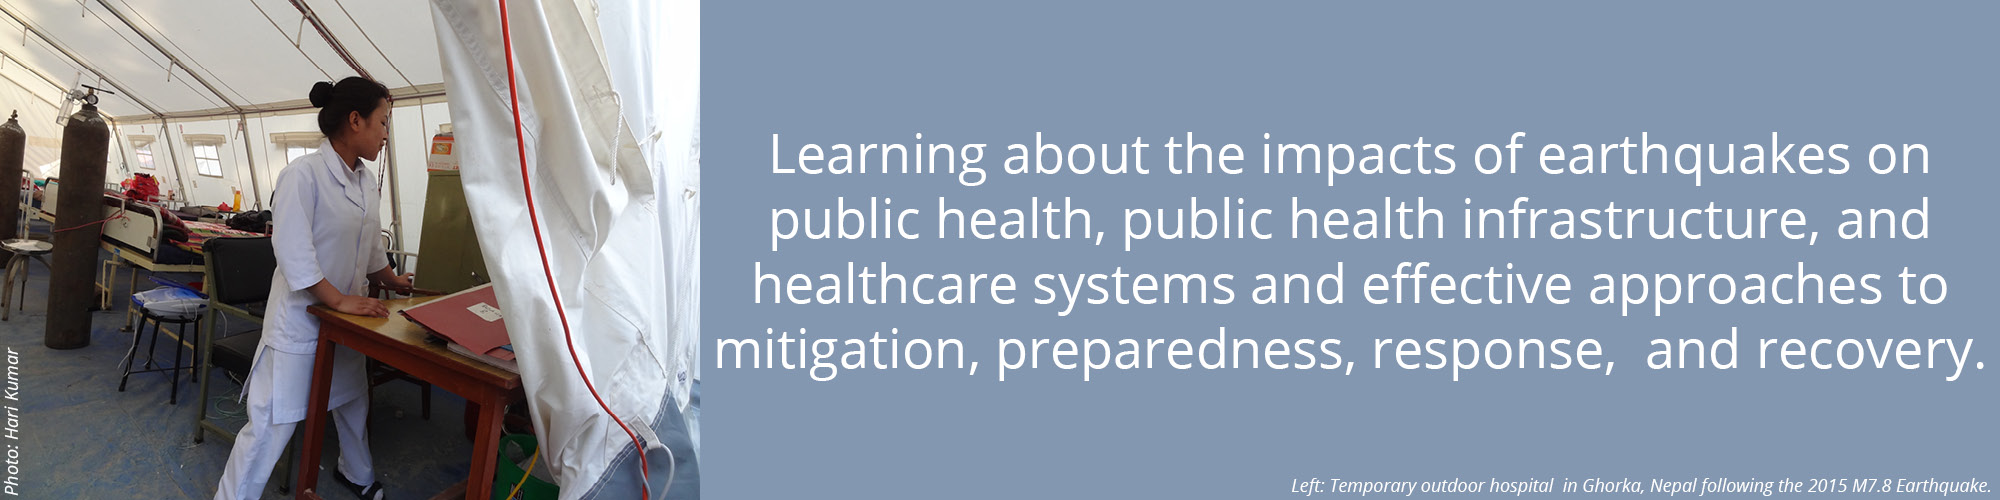 LFE Website Header Public Health6 v2